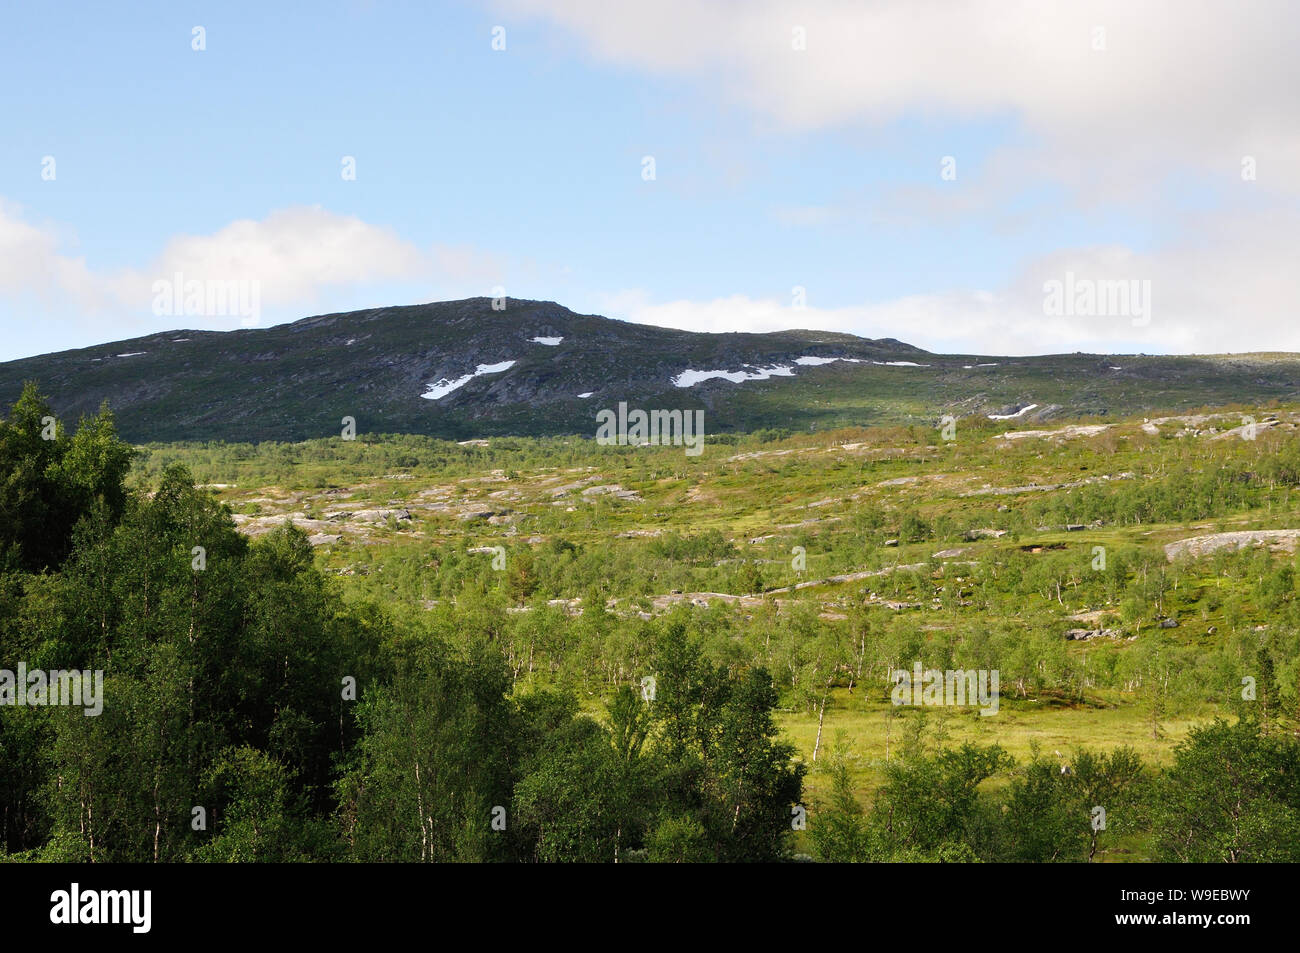 Der Nationalpark Saltfjellet-Svartisen in Norwegen lädt mit einer wilden romatischen Landschaft zum wandern und Erholen ein. Hier sind wir in der Nähe Stock Photo